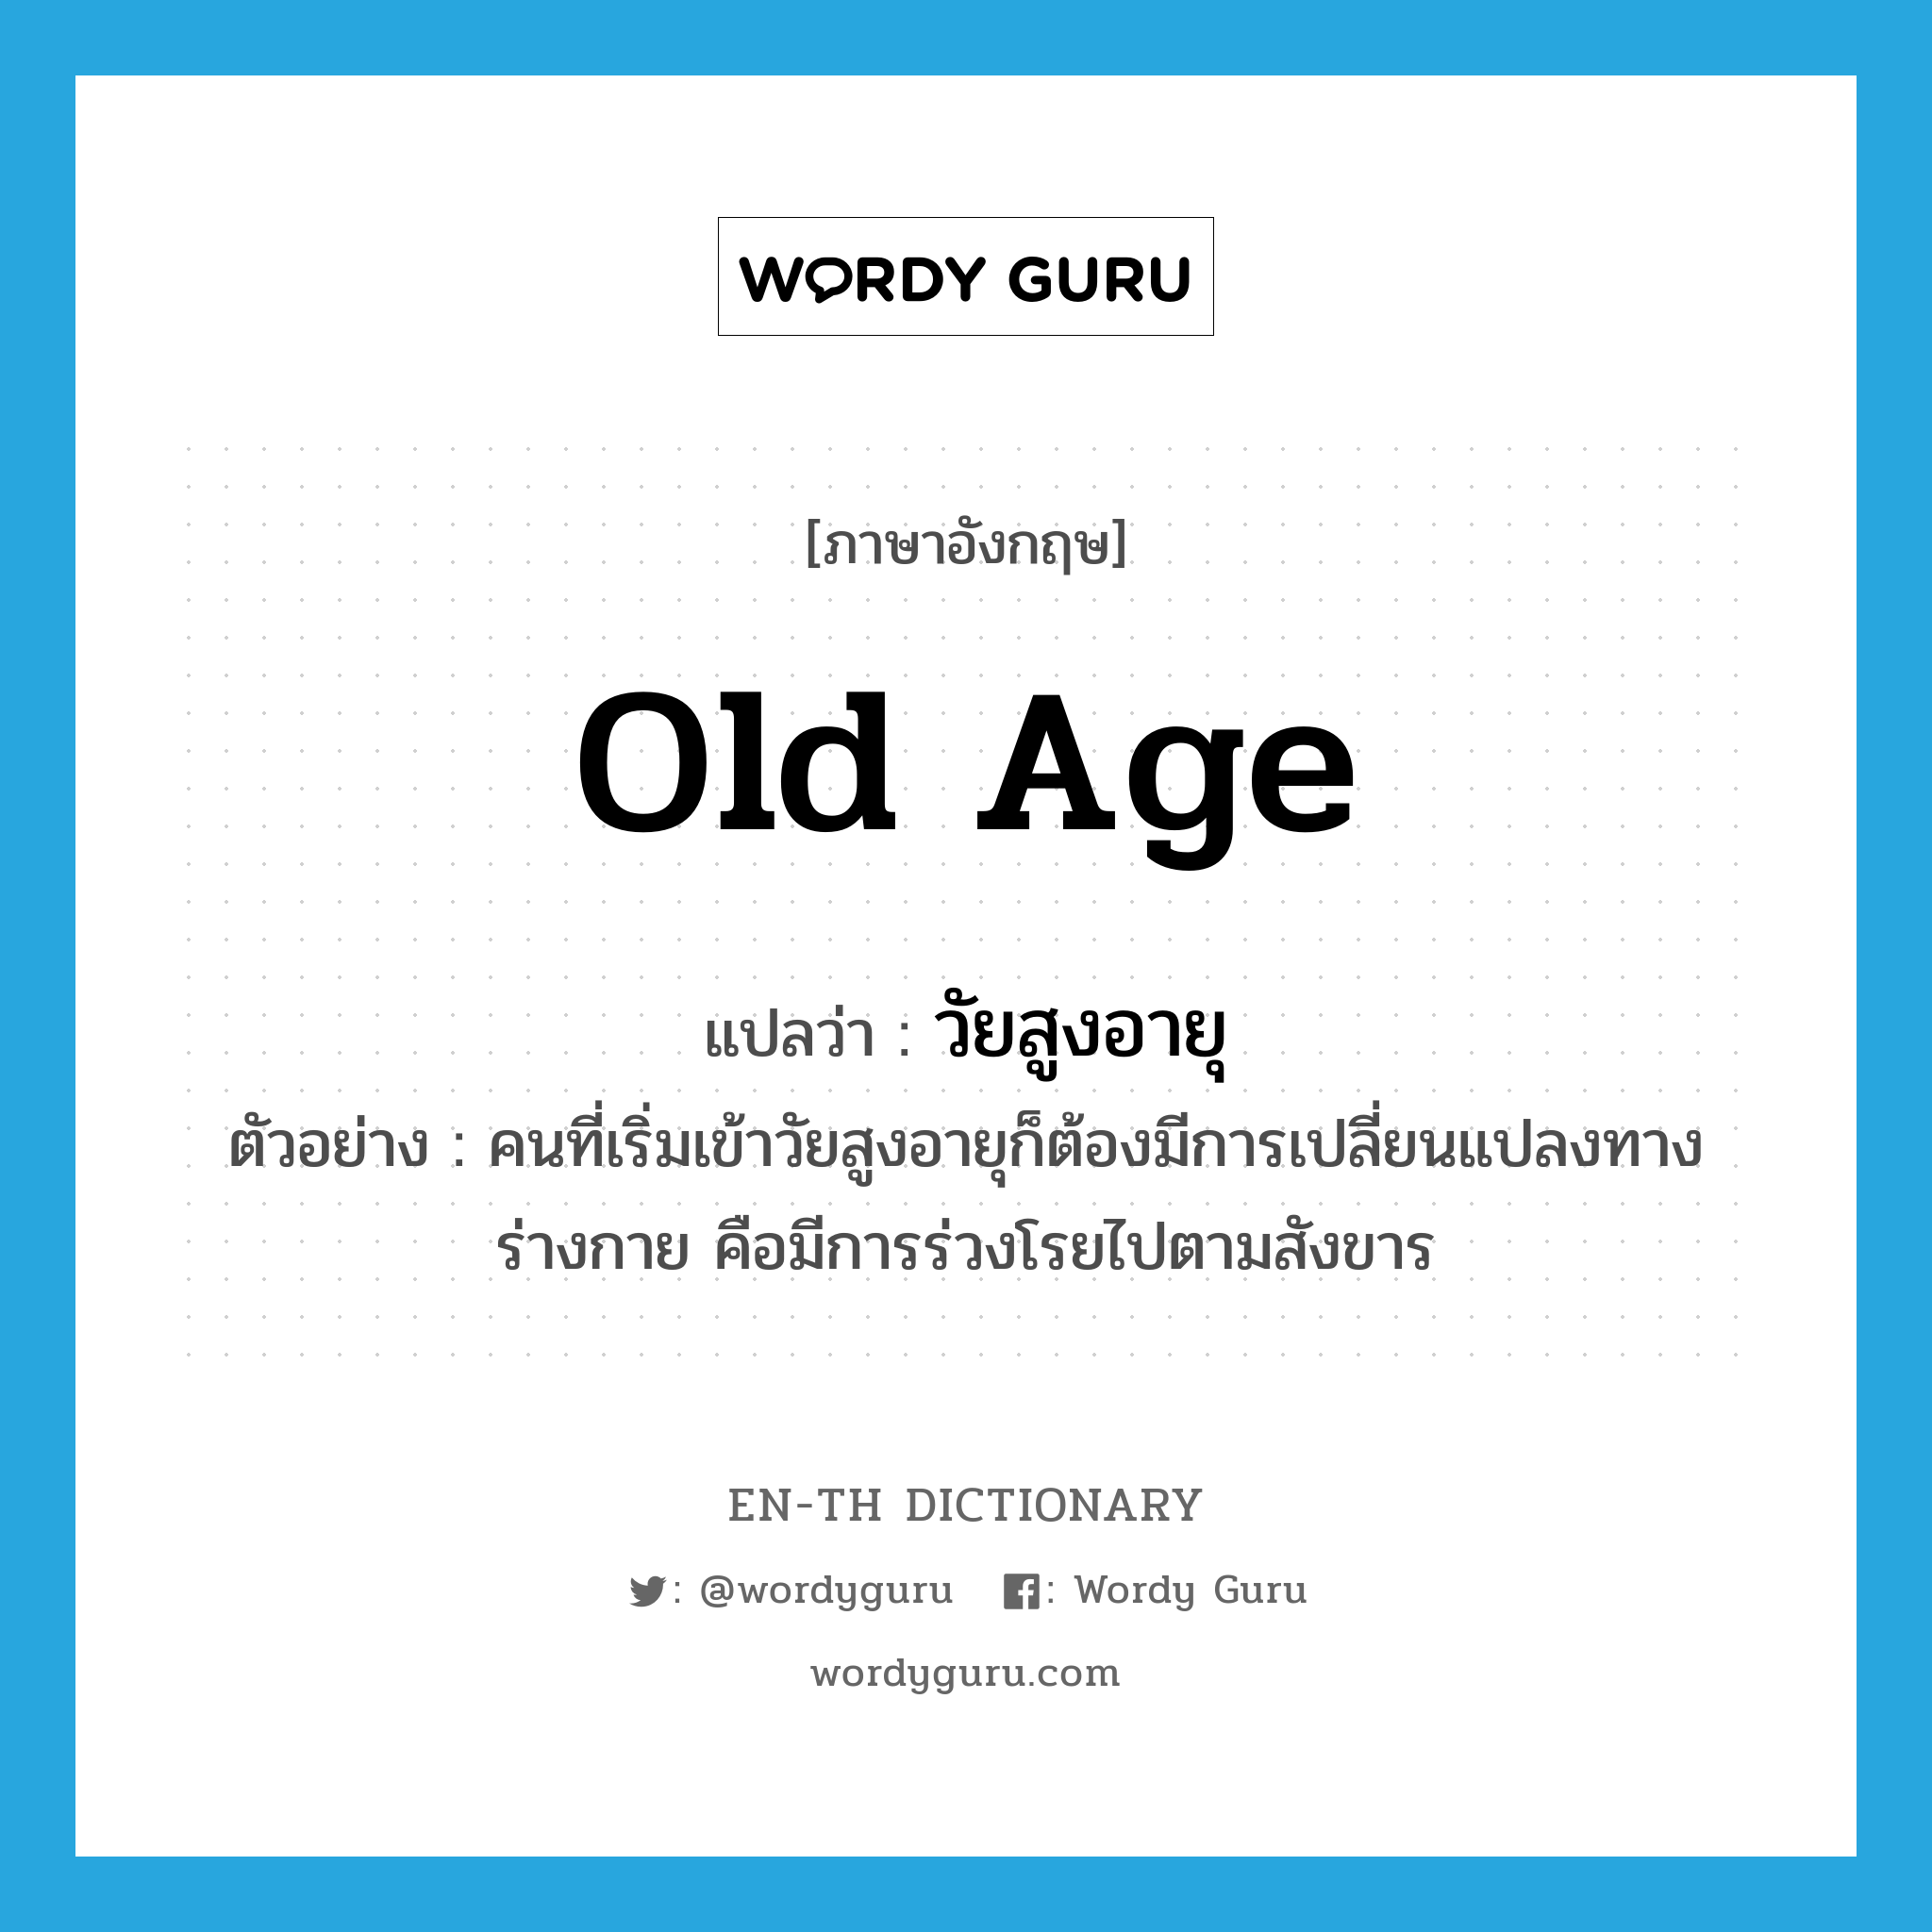 old age แปลว่า?, คำศัพท์ภาษาอังกฤษ old age แปลว่า วัยสูงอายุ ประเภท N ตัวอย่าง คนที่เริ่มเข้าวัยสูงอายุก็ต้องมีการเปลี่ยนแปลงทางร่างกาย คือมีการร่วงโรยไปตามสังขาร หมวด N